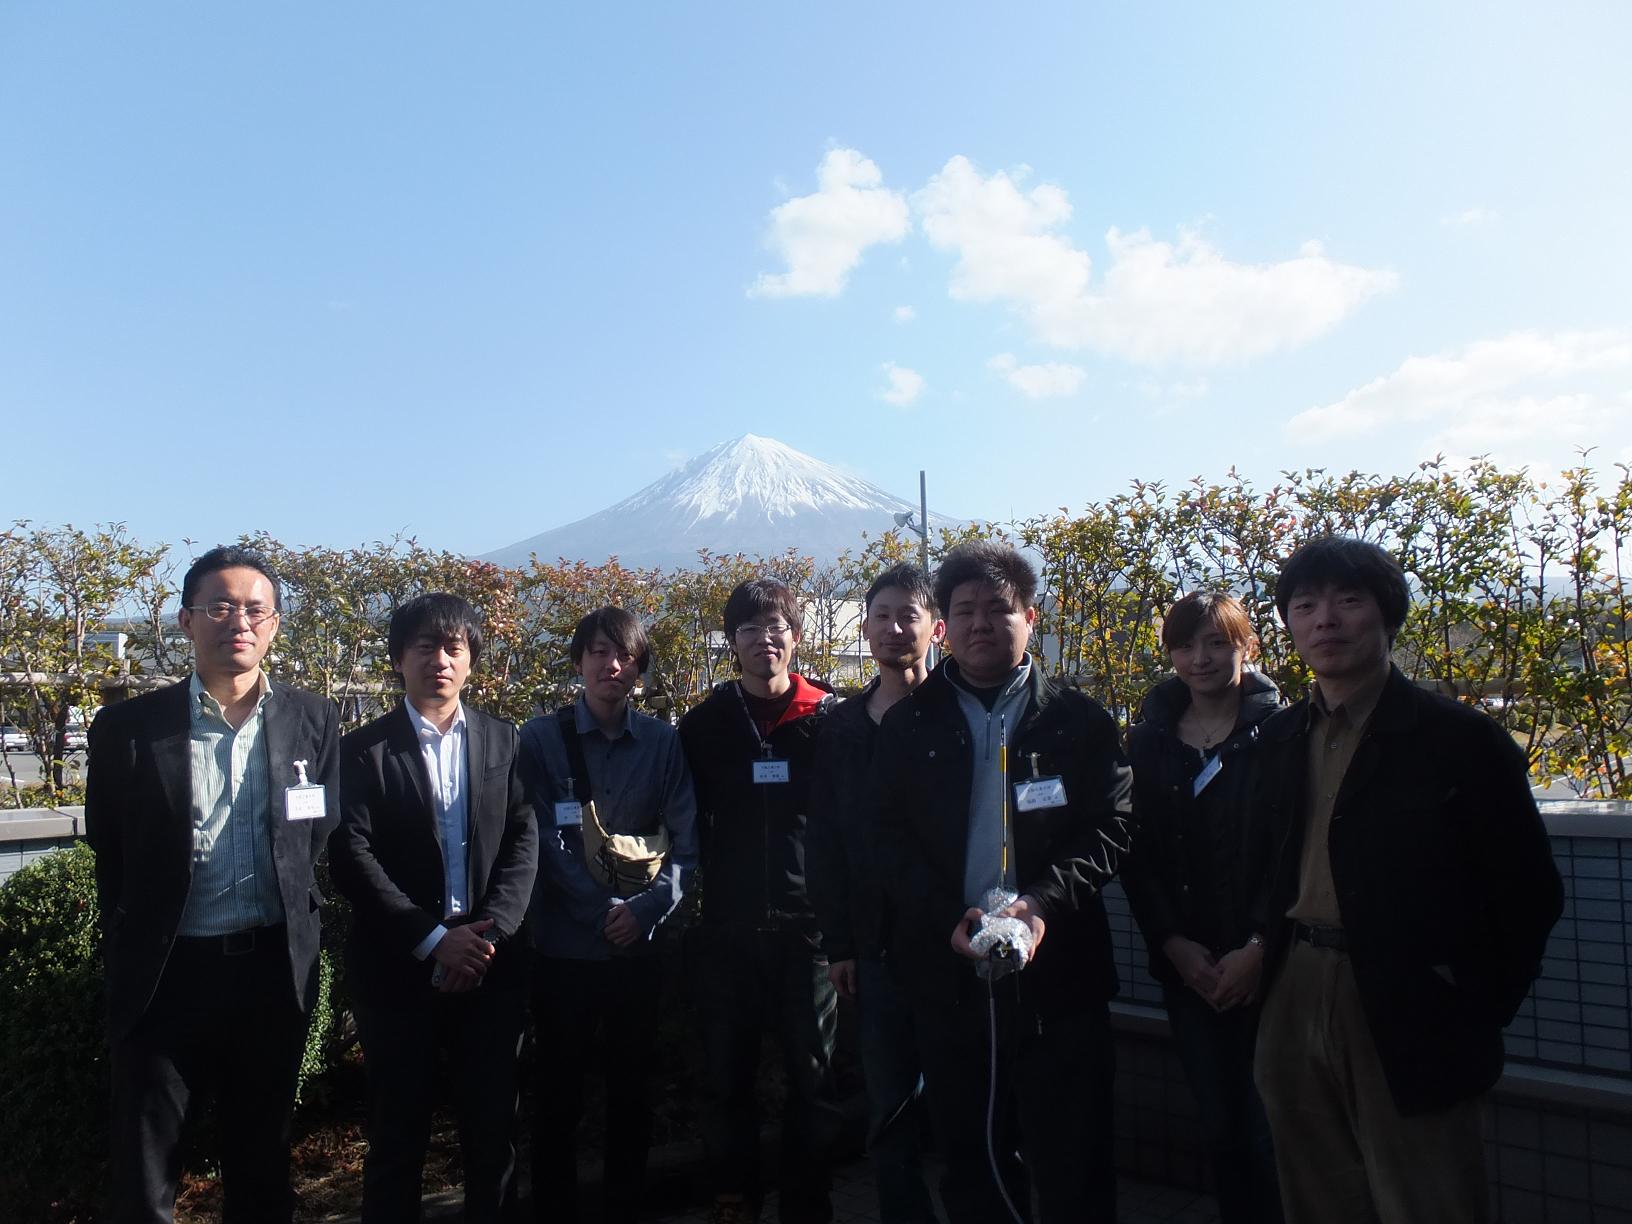 KakenExperimentConference@Fujinomiya_Mt. Fuji_DSCF0844q.JPG